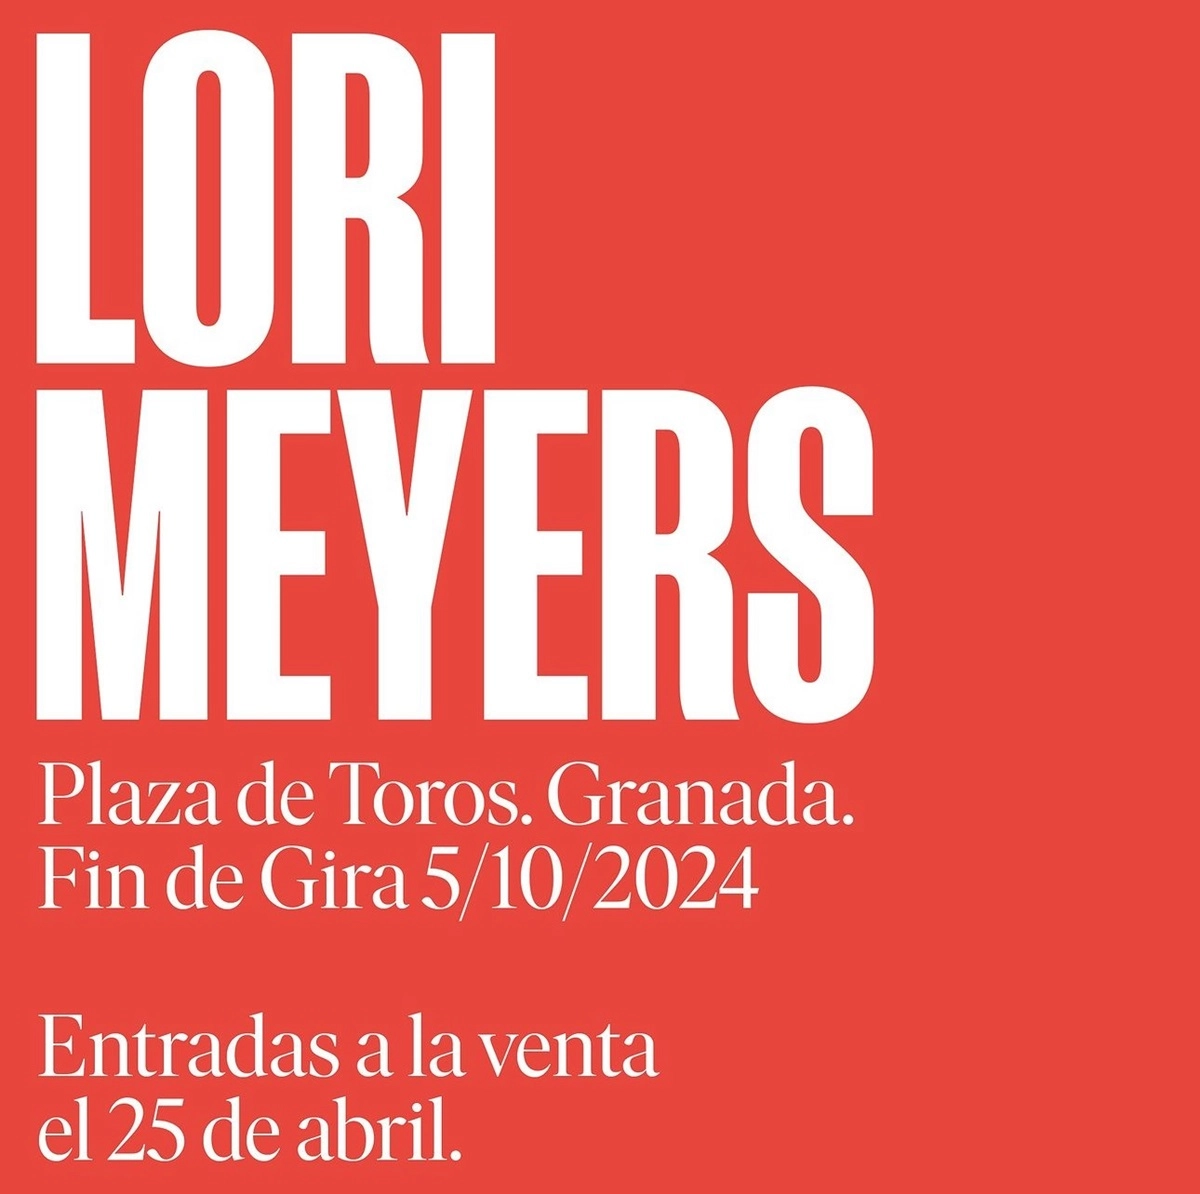 Billets Lori Meyers (Plaza de Toros de Granada - Grenade)